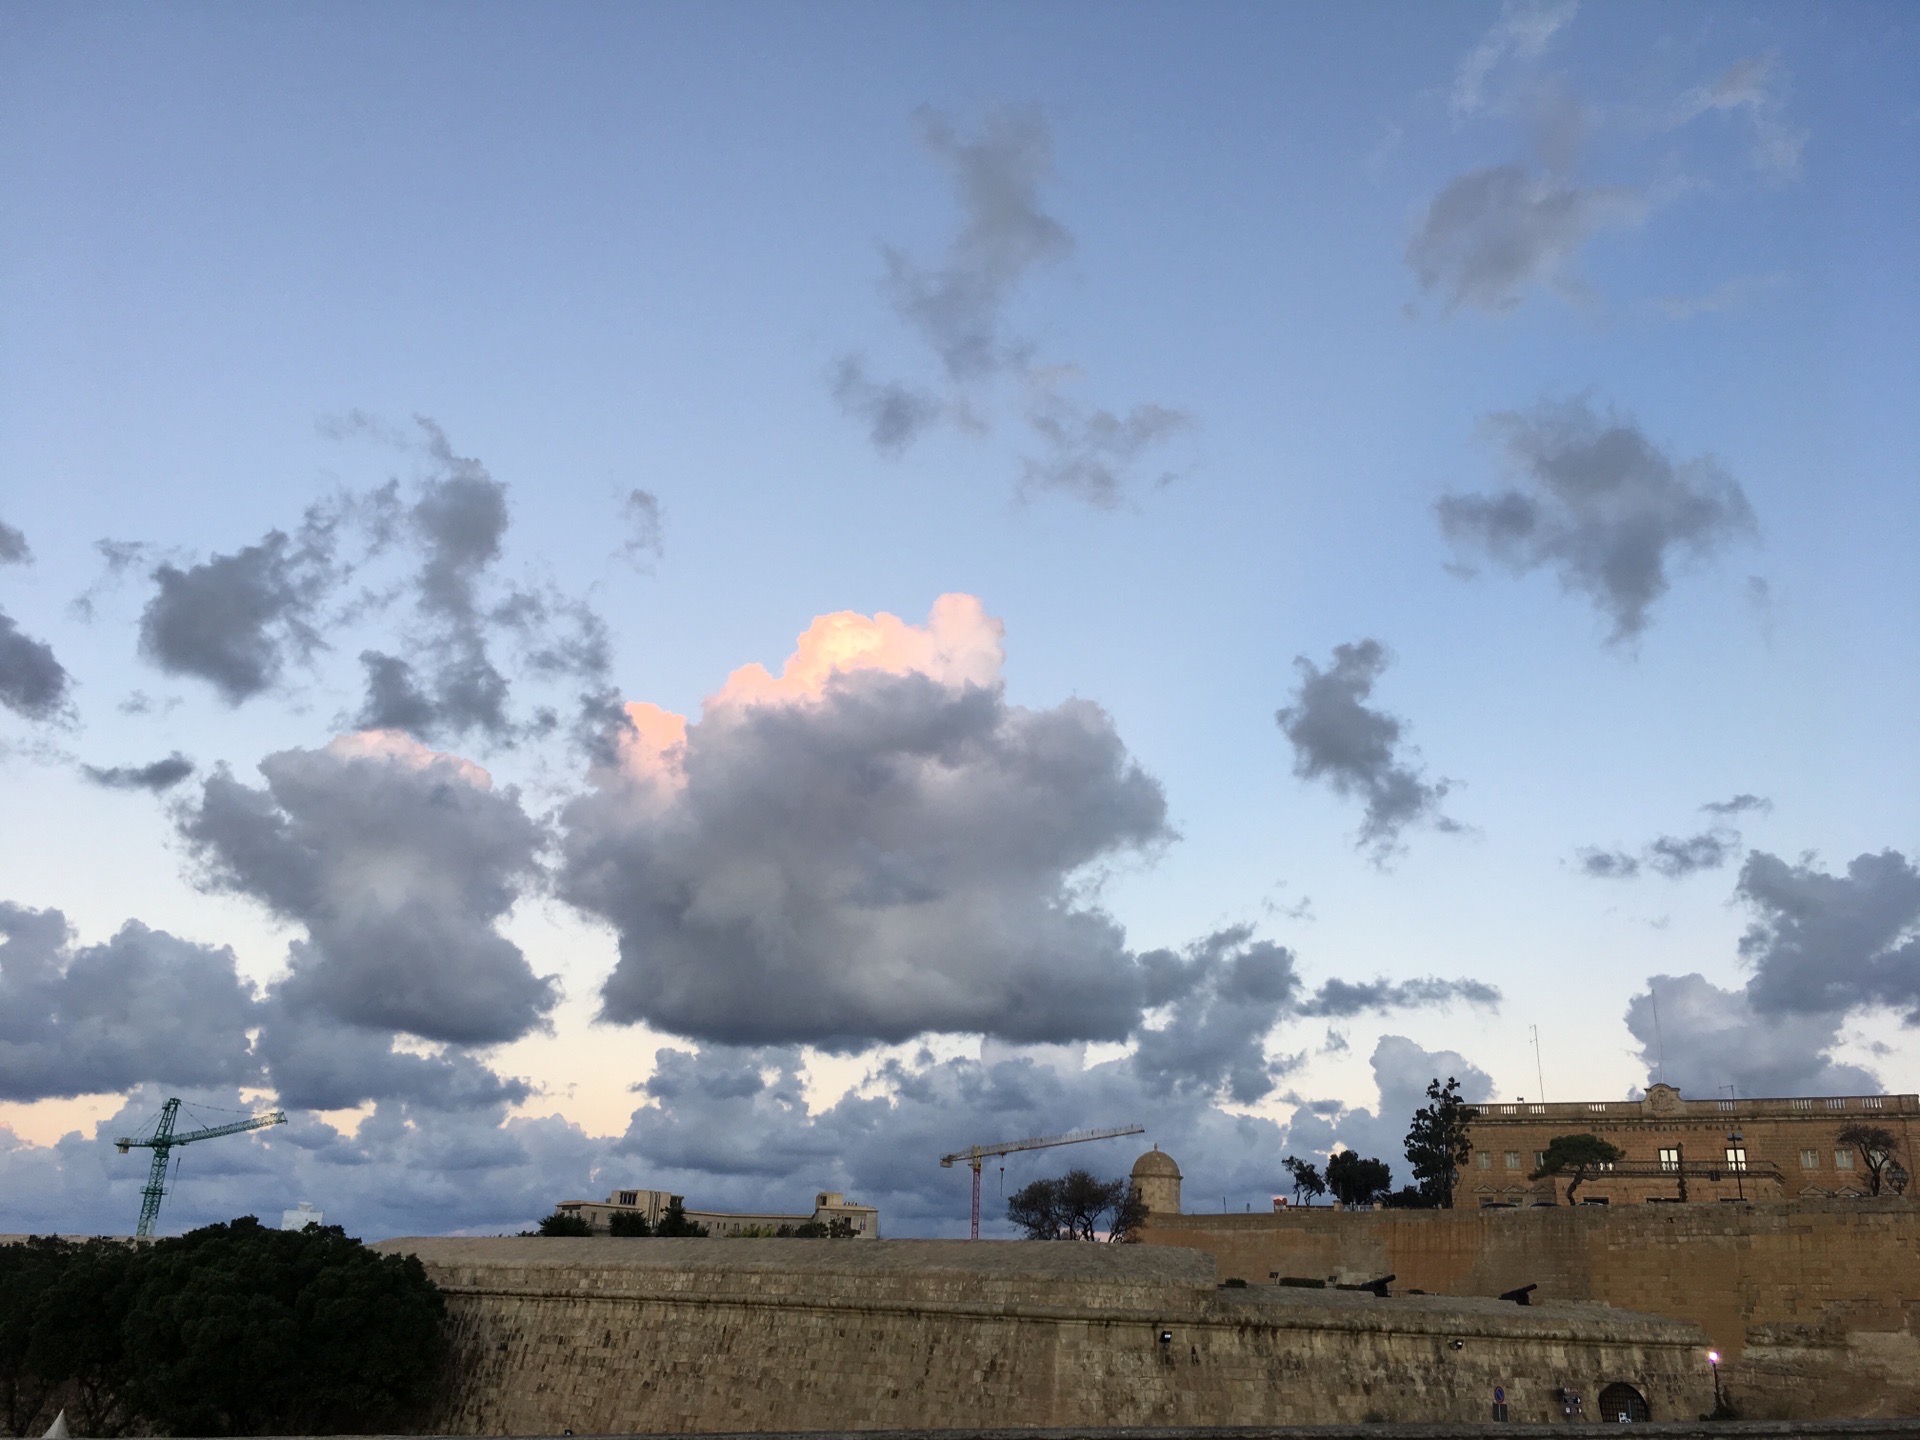 马耳他的朝阳。疫情防控期间，闲来翻看旧时照片，对马耳他的朝阳印象很深。当时清晨，一个人漫步在马耳他首